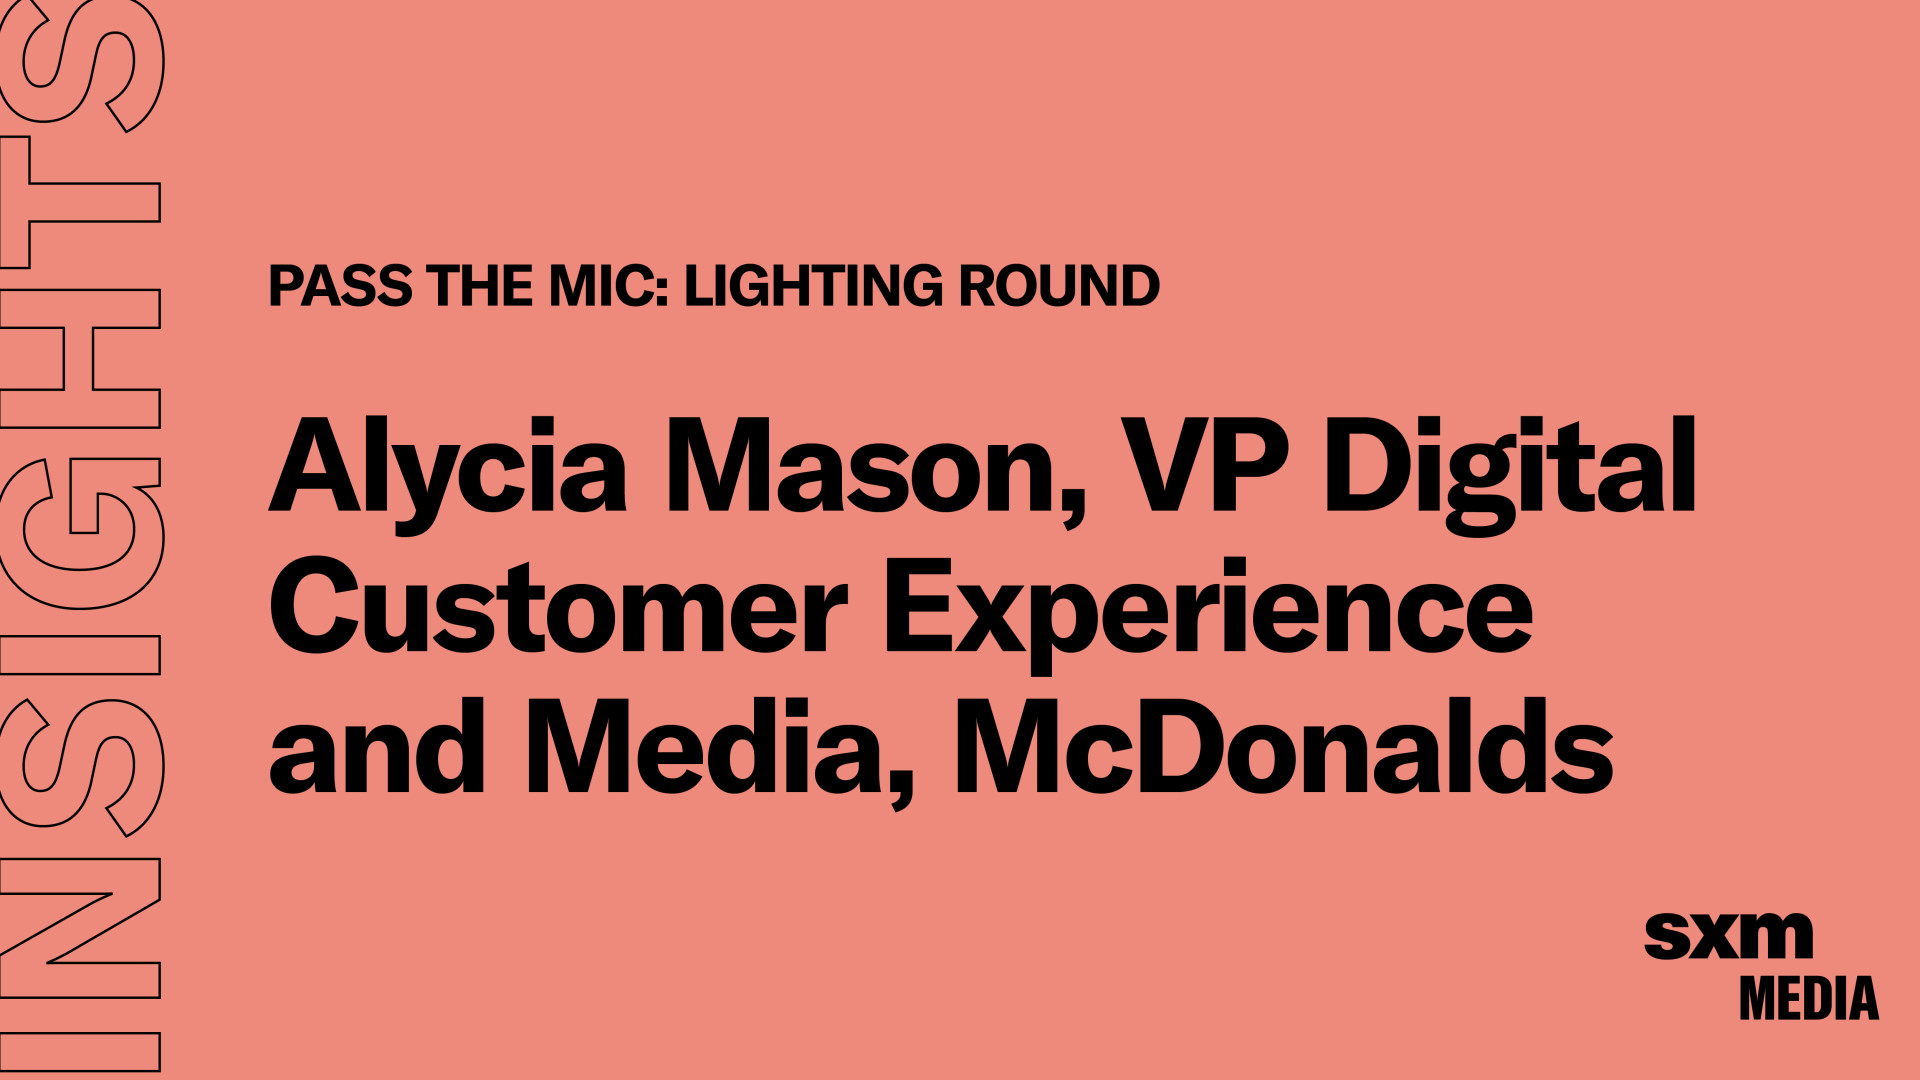 5832 Social Sharing Cards for Blog Posts r1 63 PTM Lightning Round- Alycia Mason, VP Digital Customer Experience and Media, McDonalds